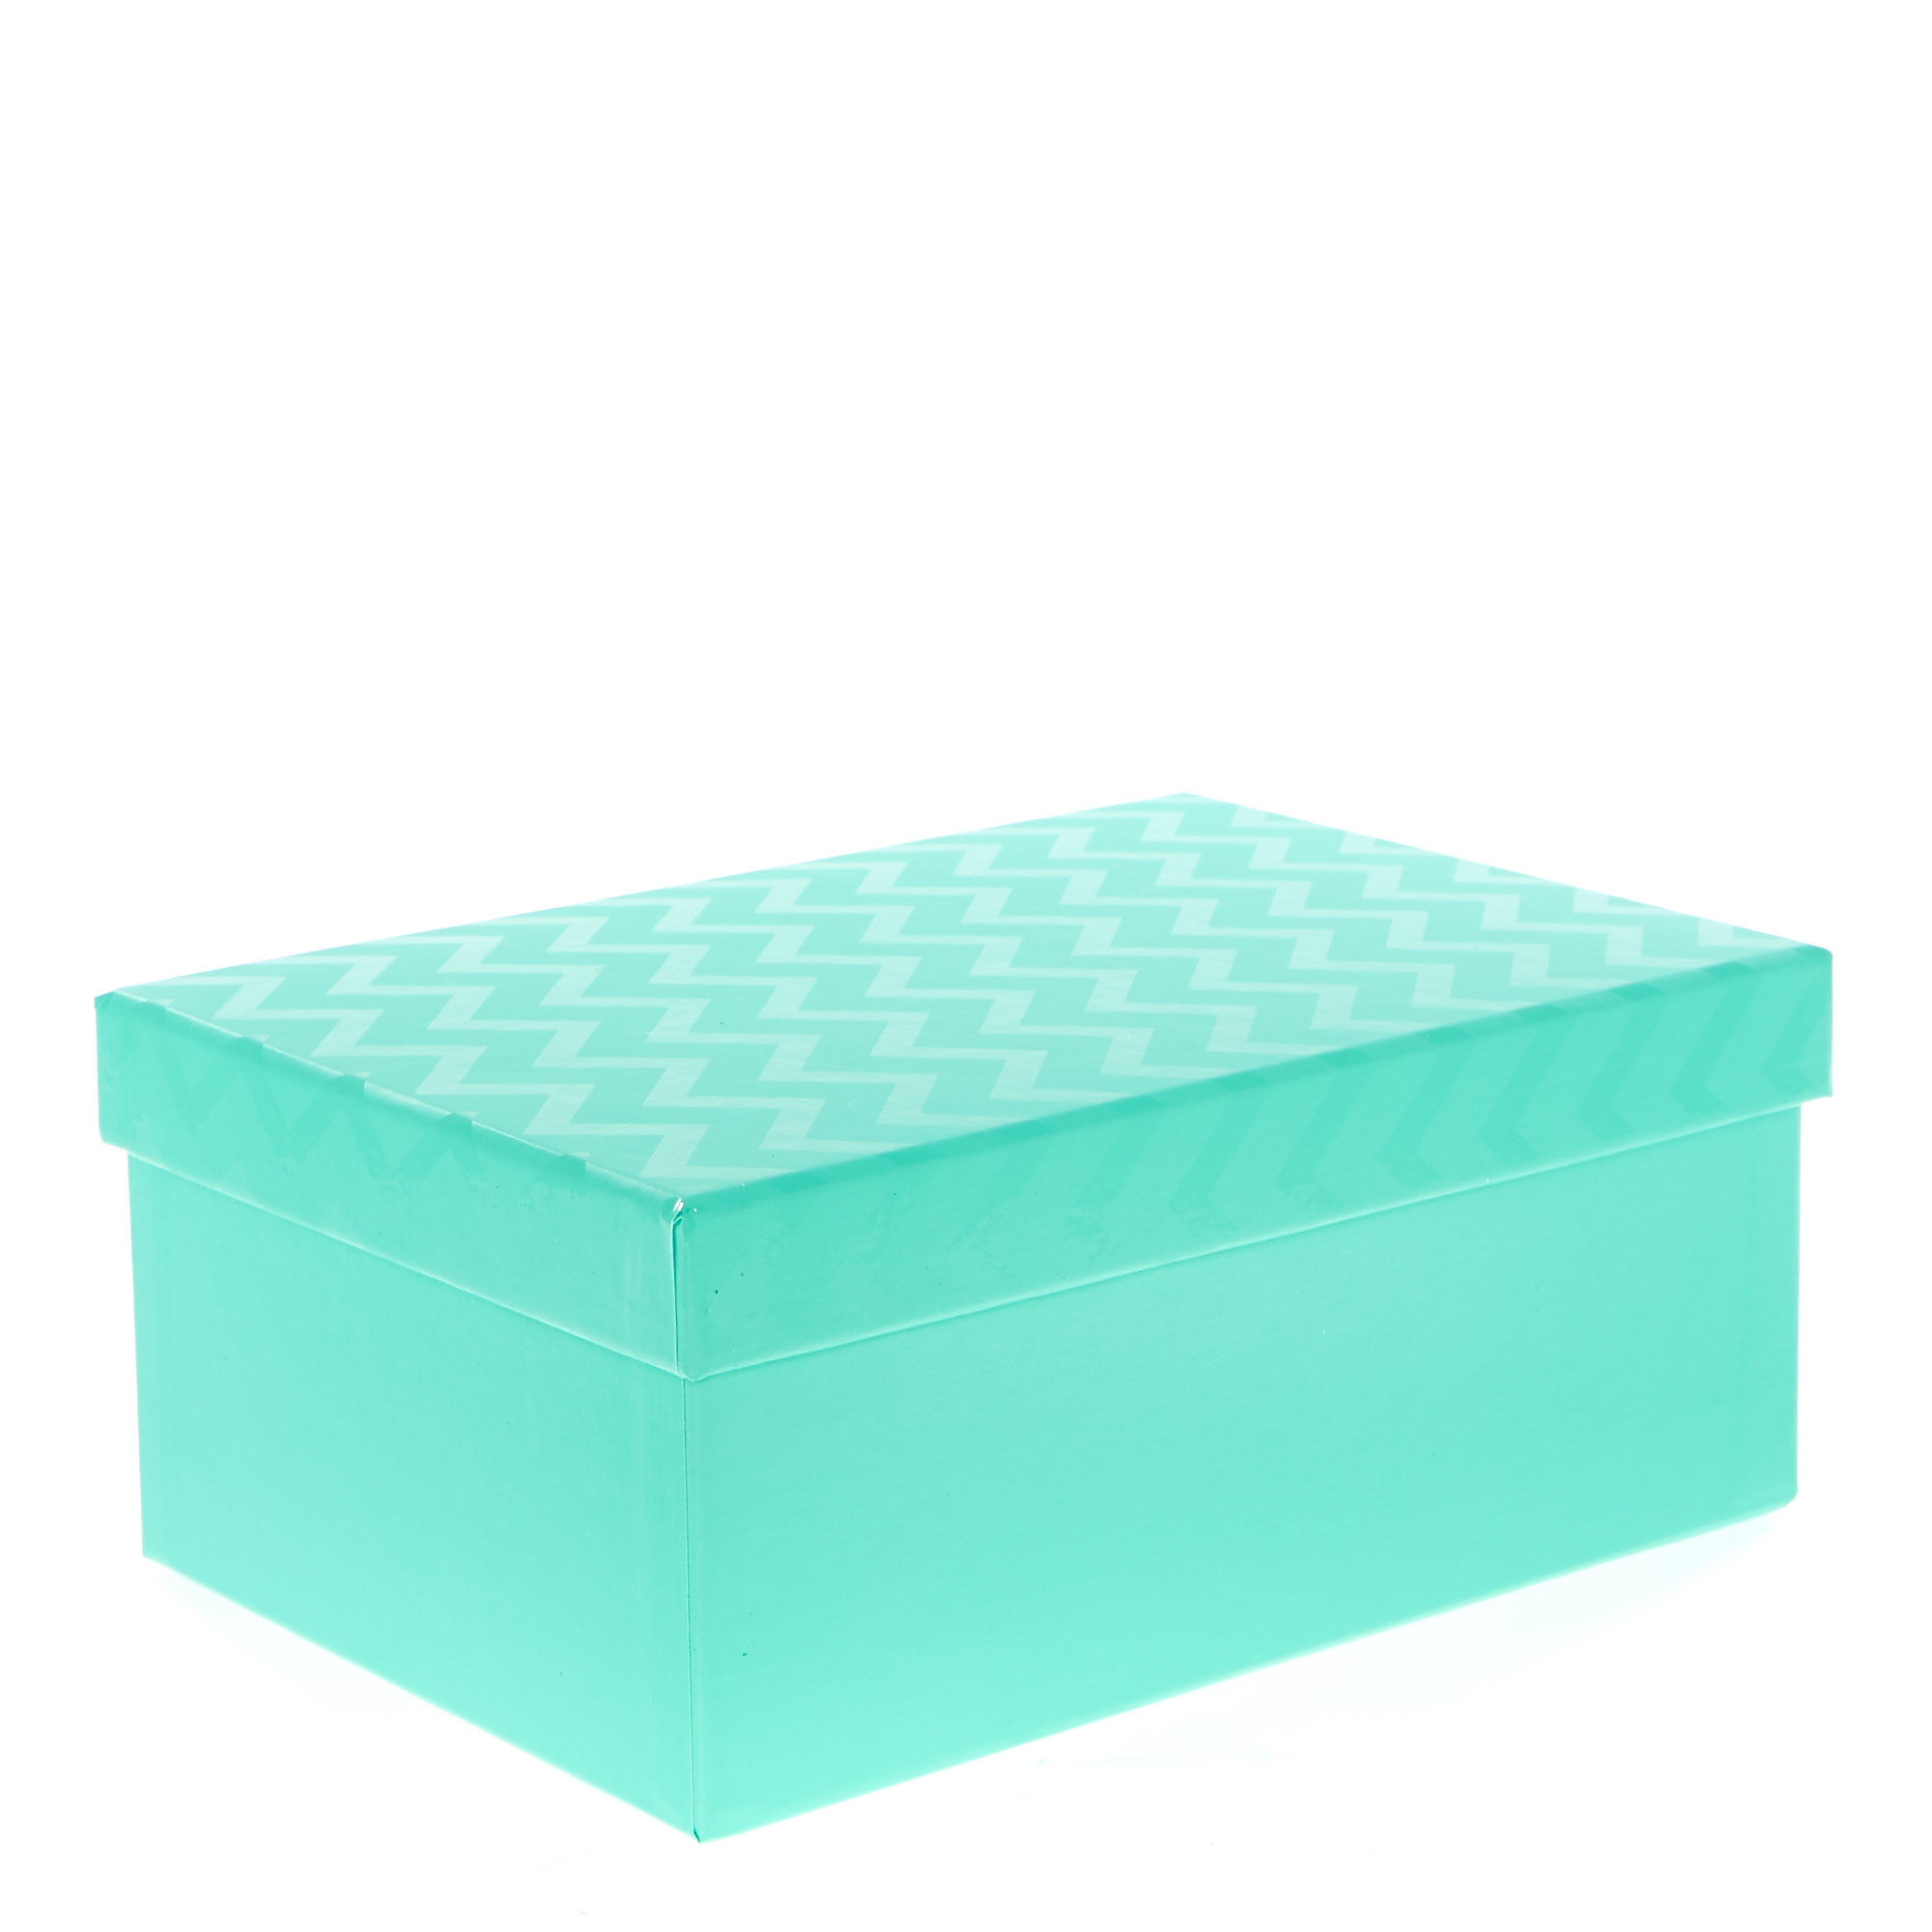 Turquoise Chevron Gift Boxes - Set Of 3